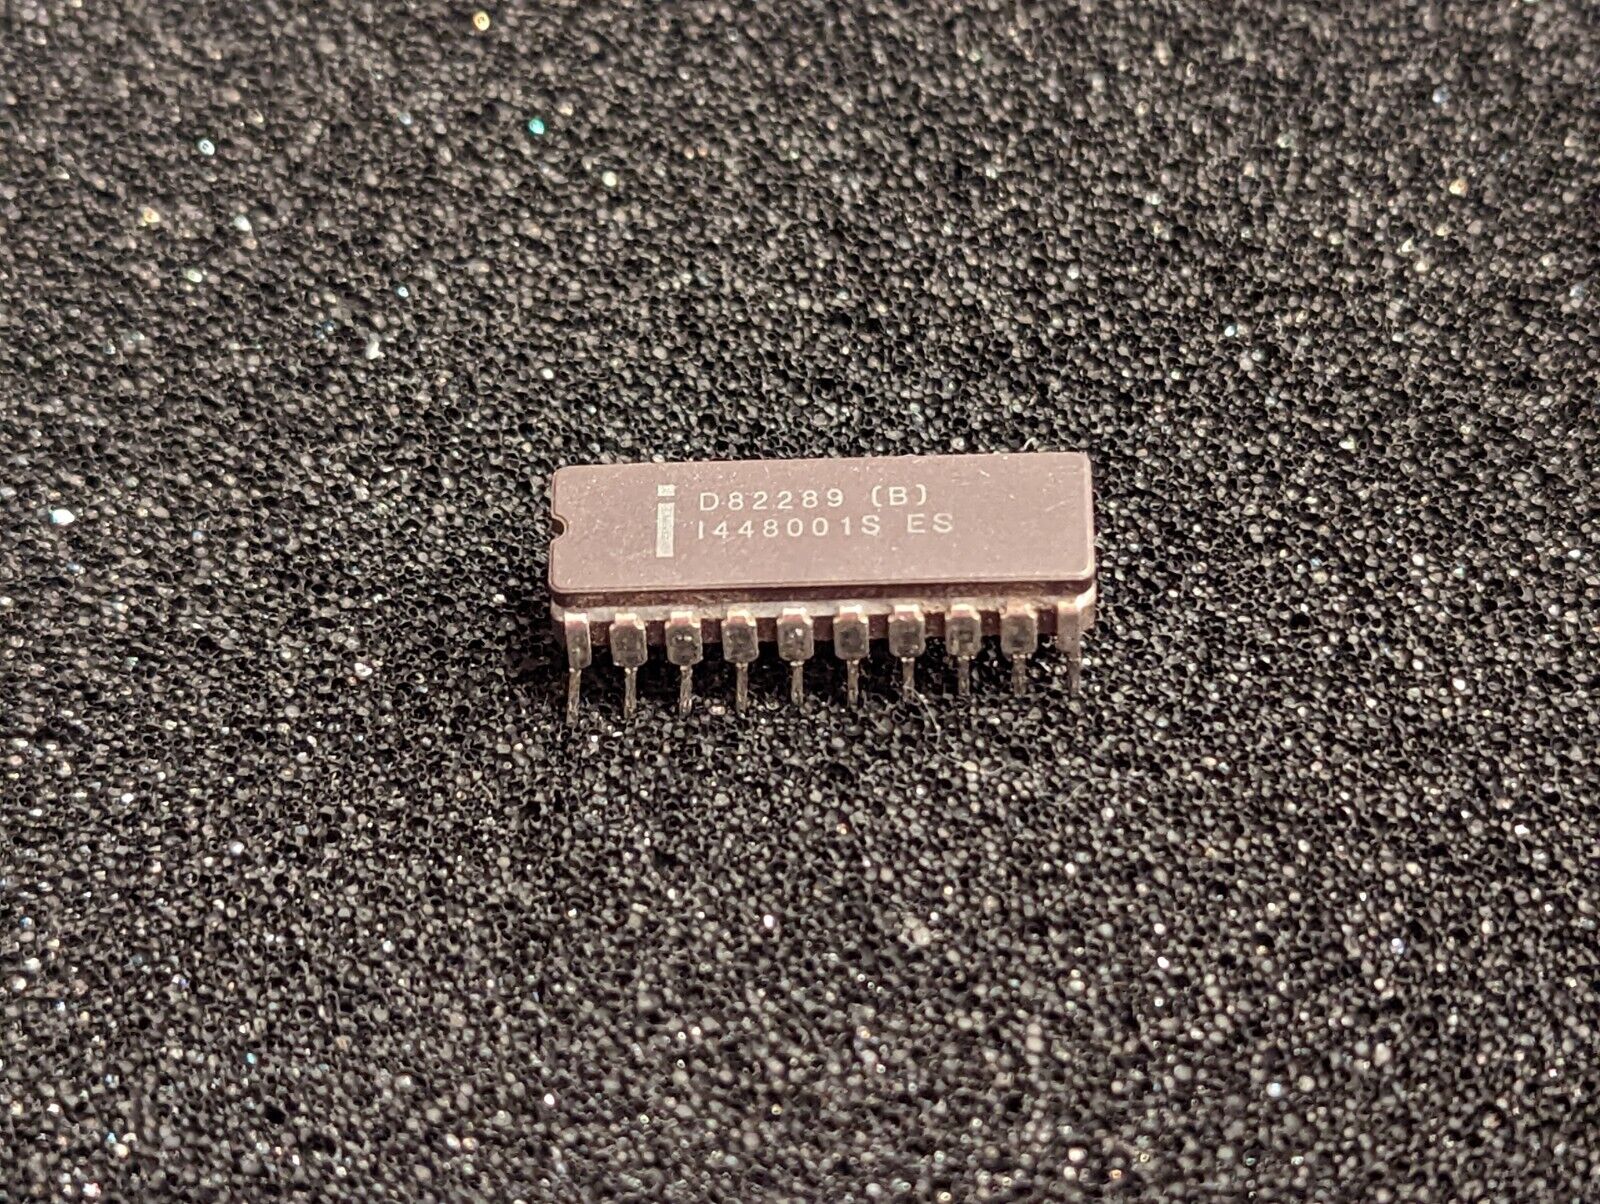 Intel D82289 (B) Engineering (ES)